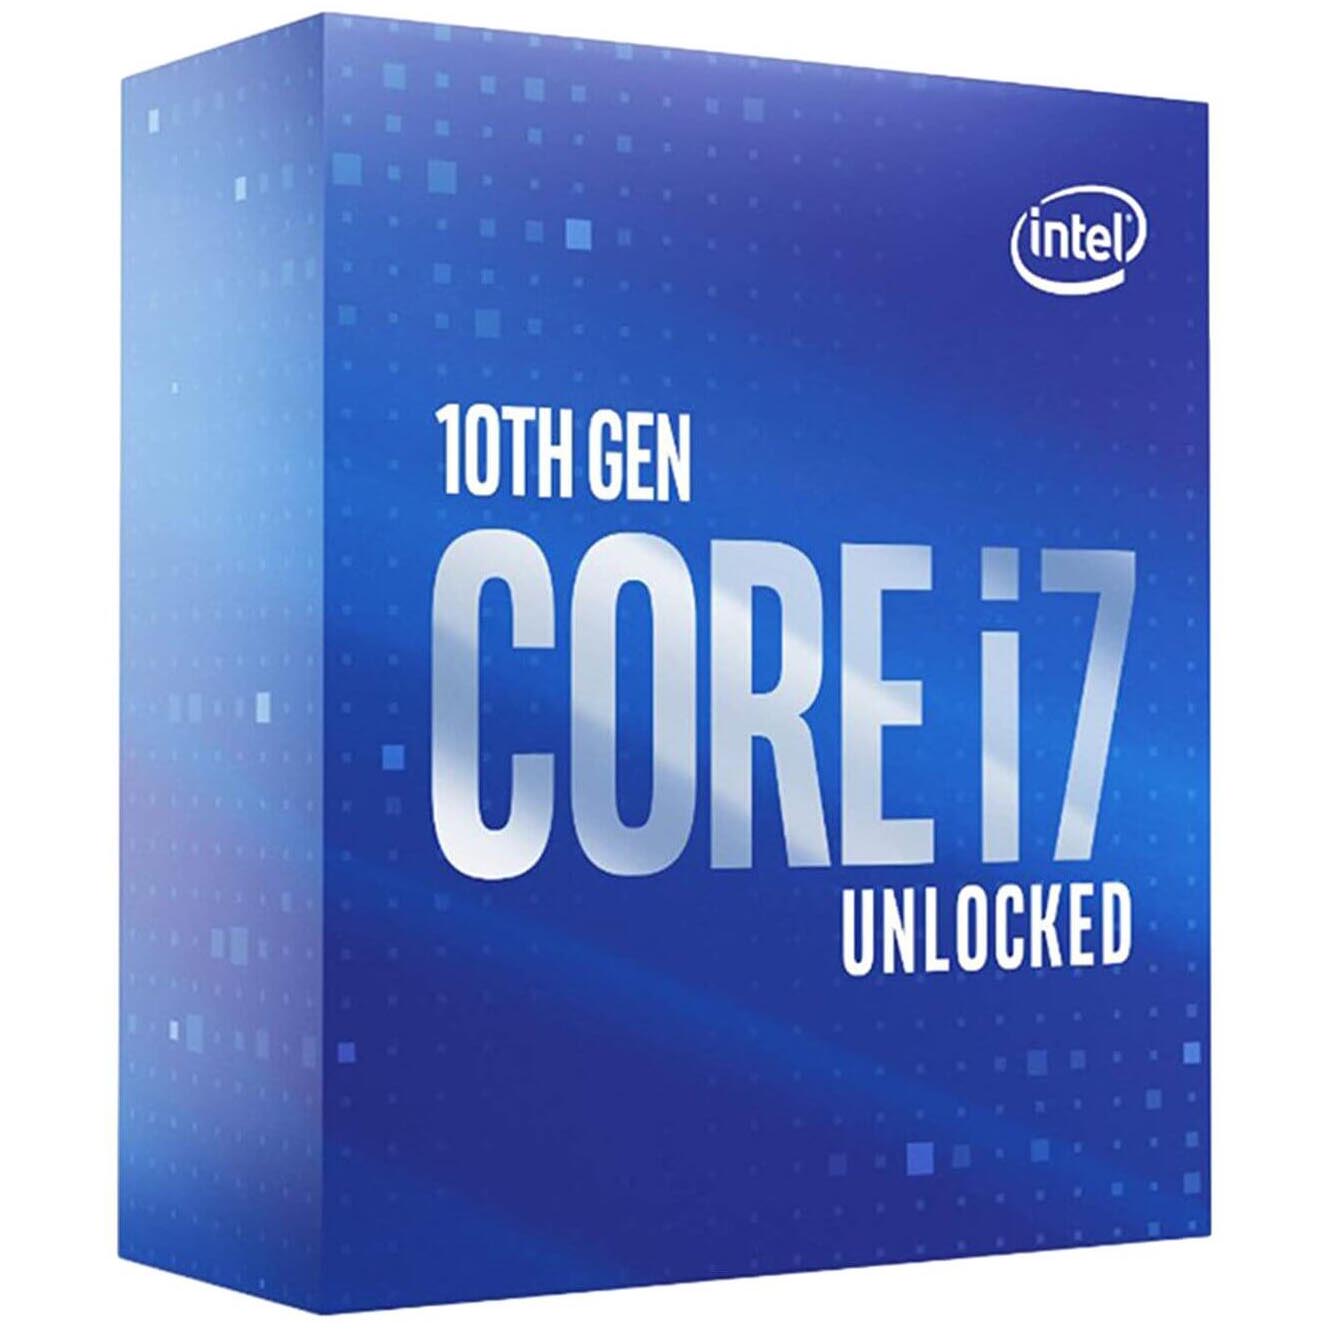 Процессор Intel Core i7-10700KF BOX (без кулера), LGA 1200 процессор intel core i7 11700f s 1200 bx8070811700f s rknr box